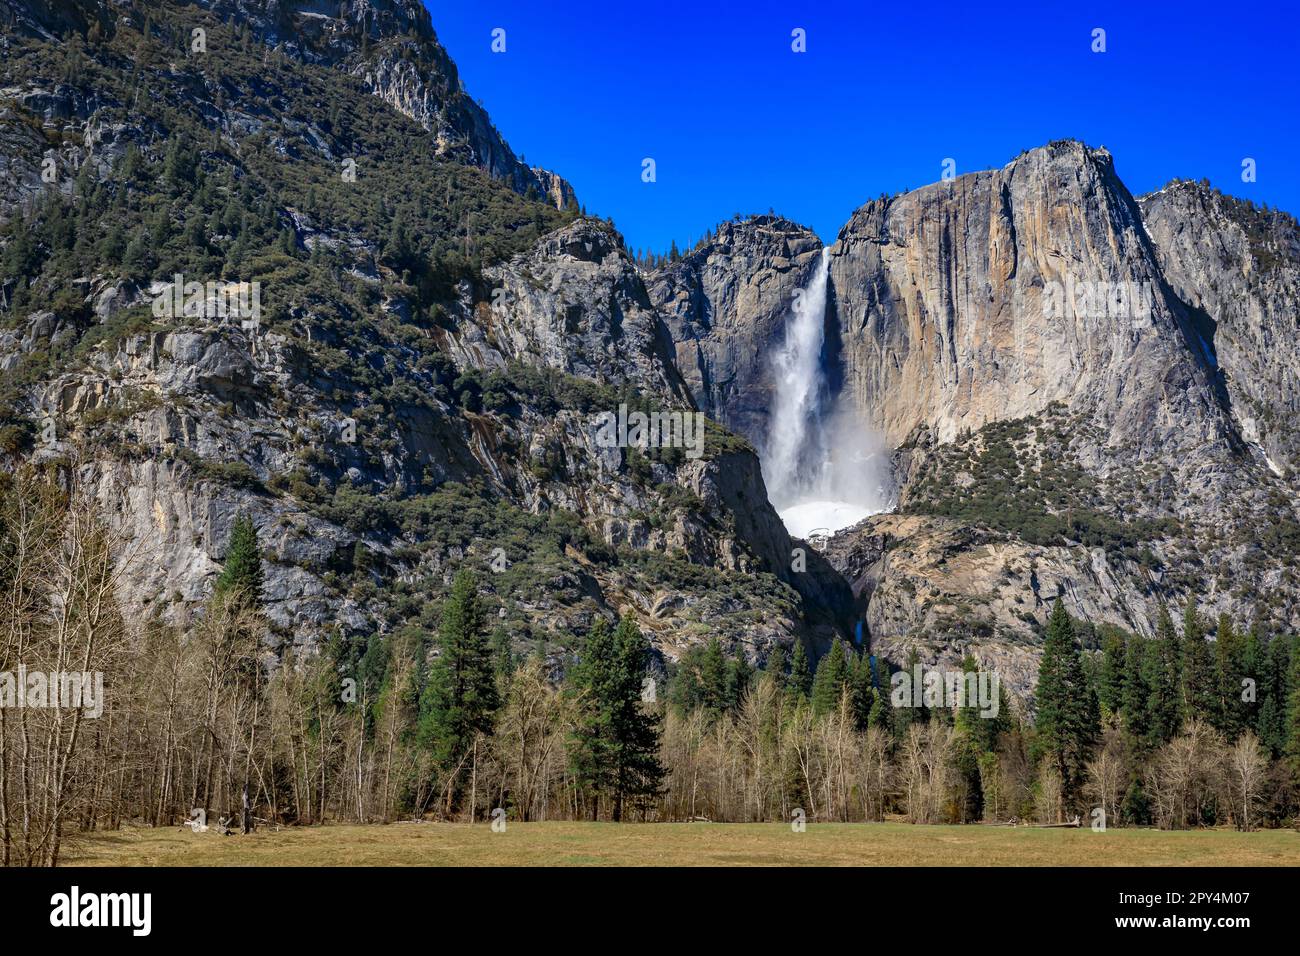 Malerischer Blick auf die Yosemite Falls mit dem im Frühling gefrorenen Schneekegel im Yosemite National Park, Sierra Nevada Bergkette in Kalifornien, USA Stockfoto